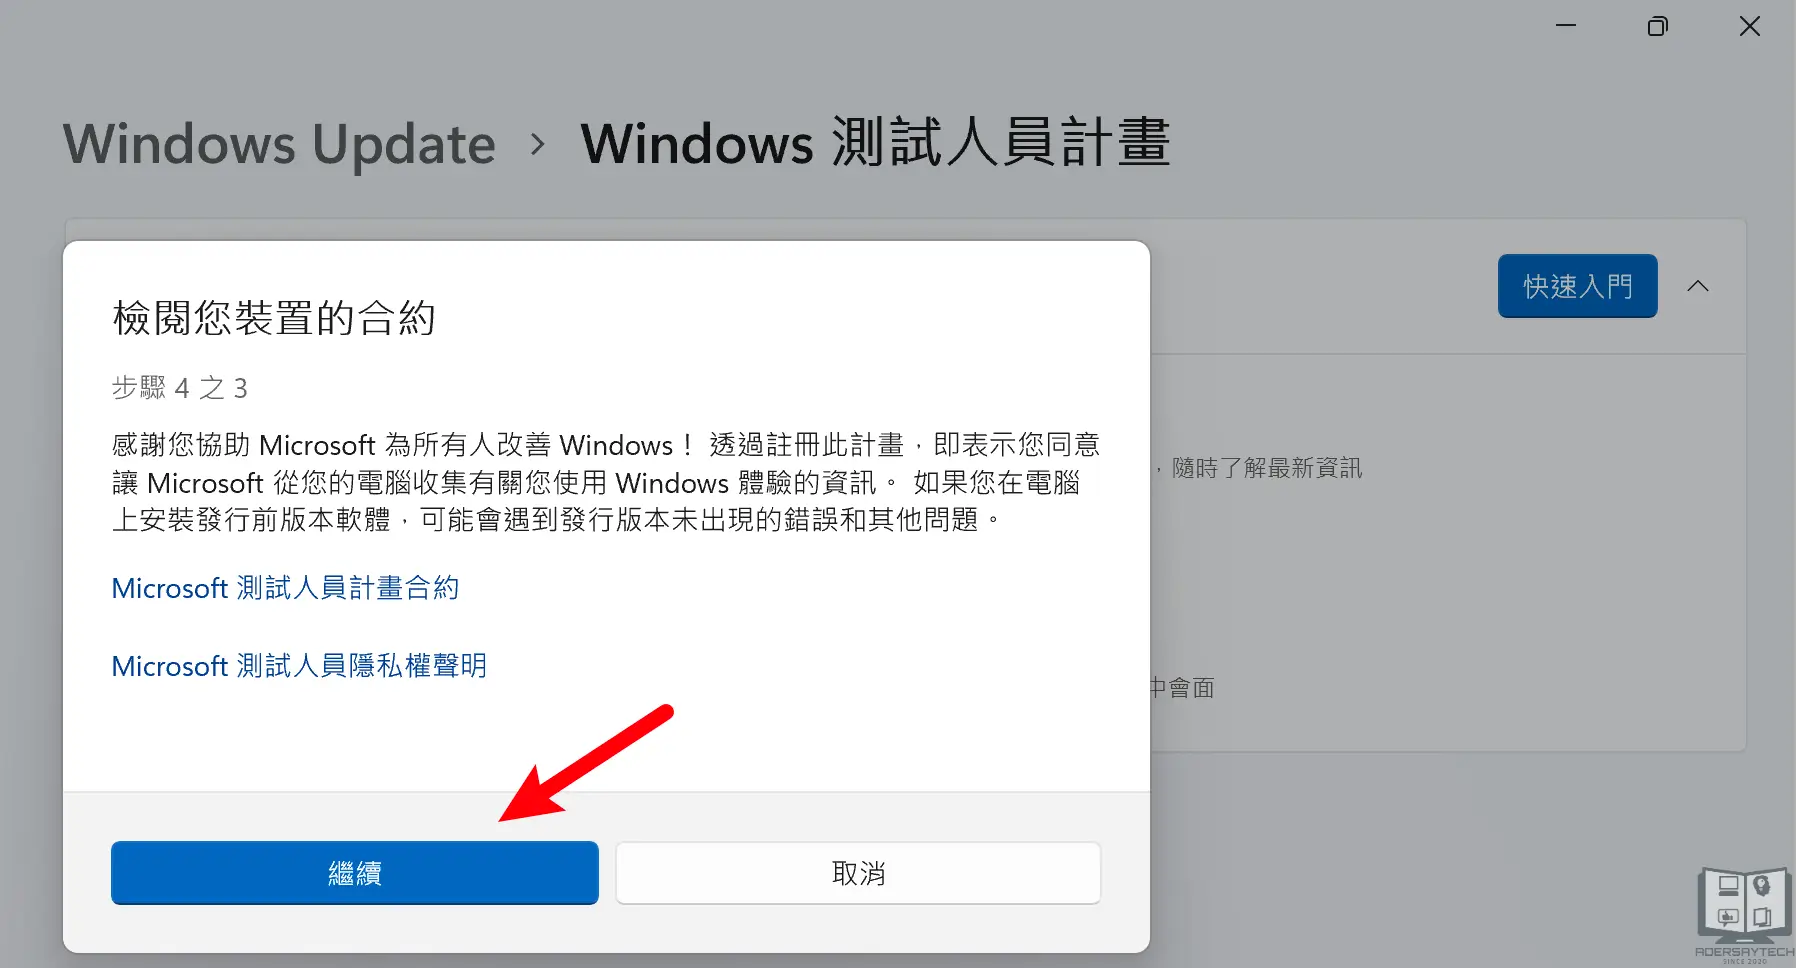 一起加入 Windows 測試人員計畫吧！Windows 11 取得測試預覽版的官方途徑！ 17